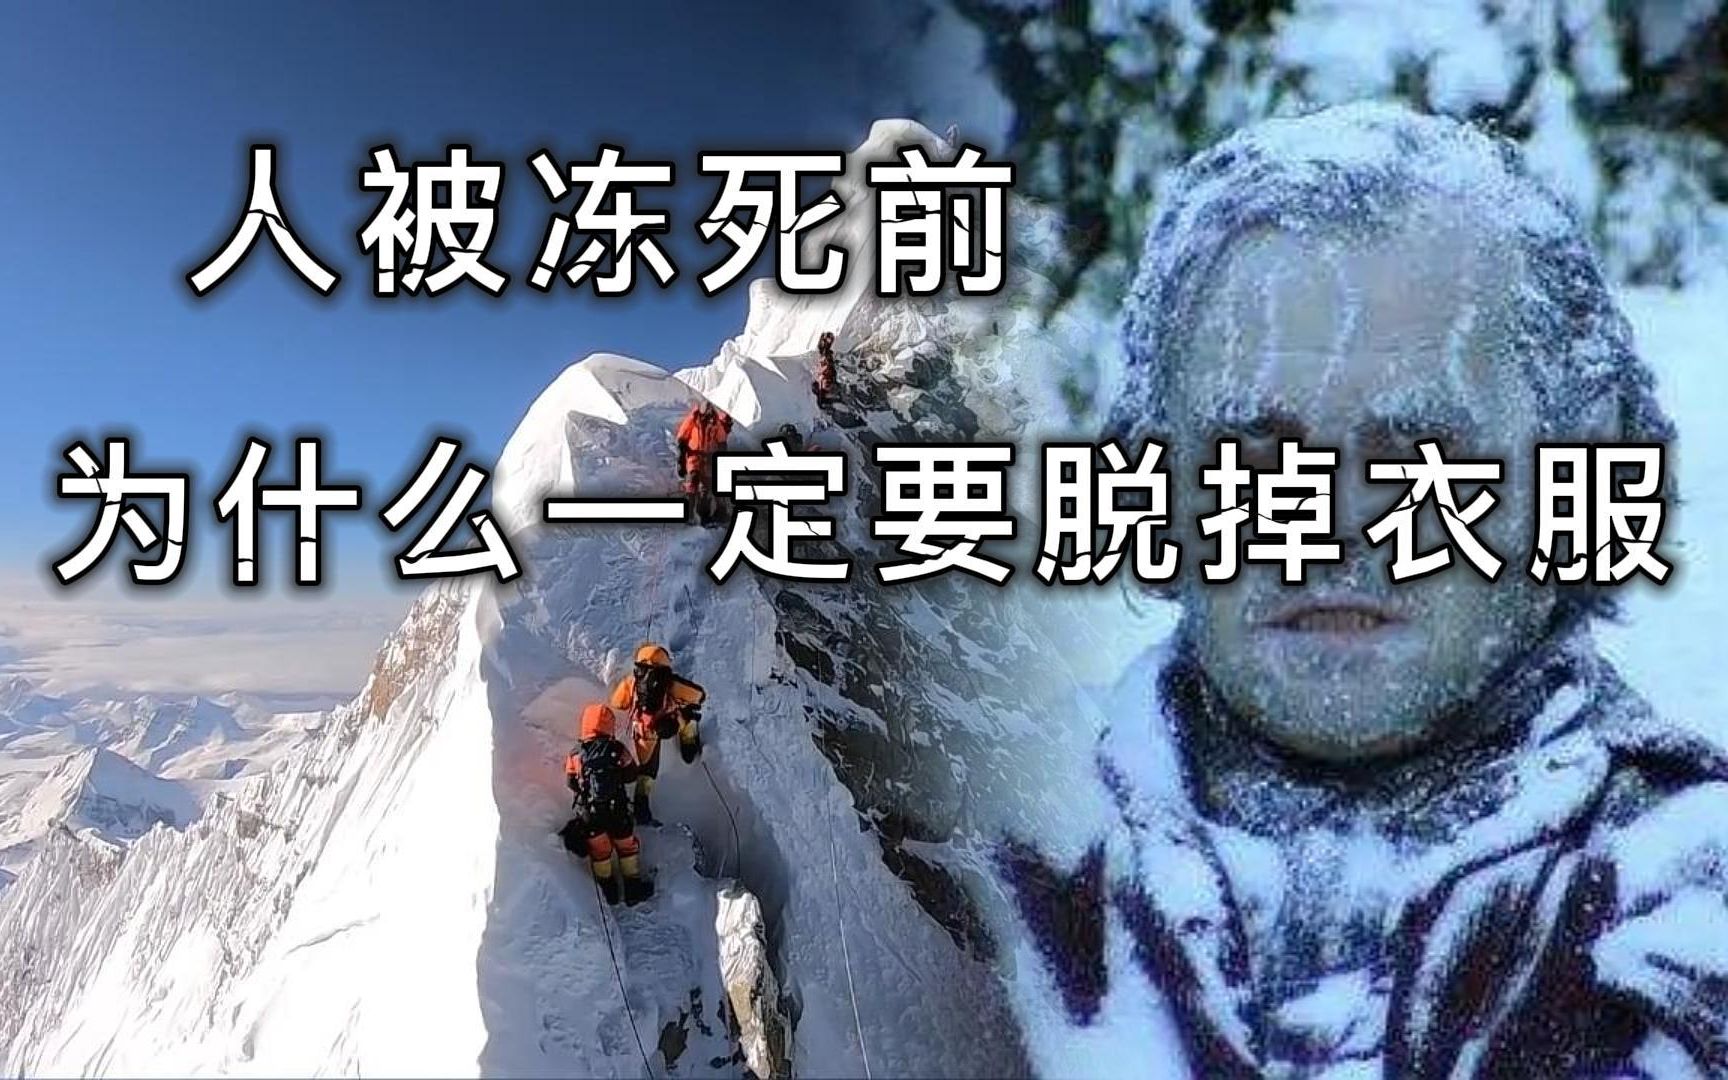 下雪滑倒视频_雪天滑倒视频集锦 - 随意云